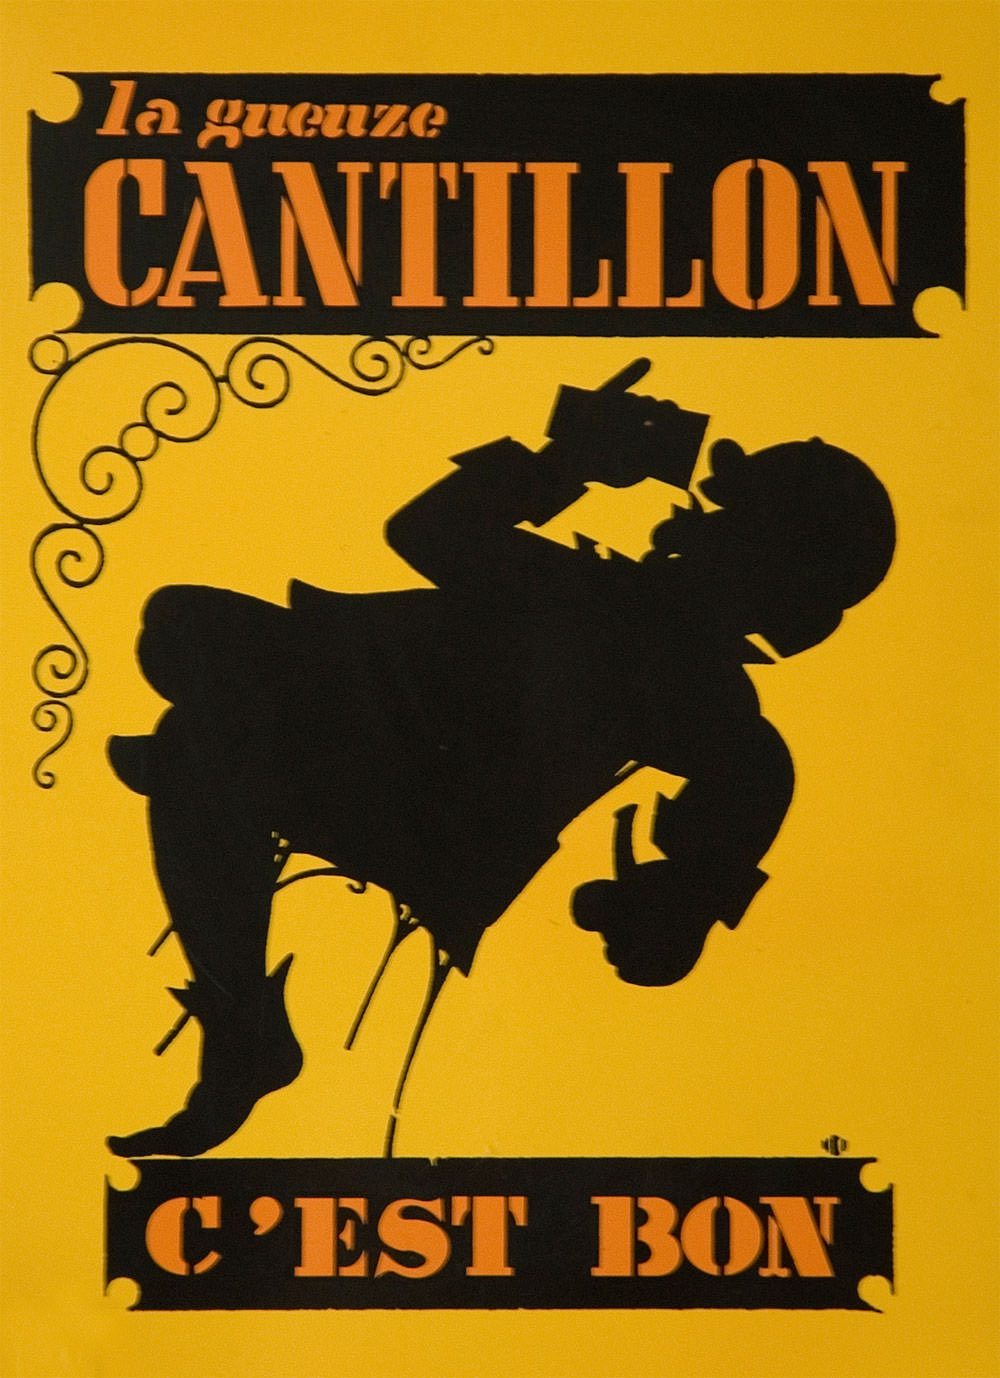 Cantillon Sign